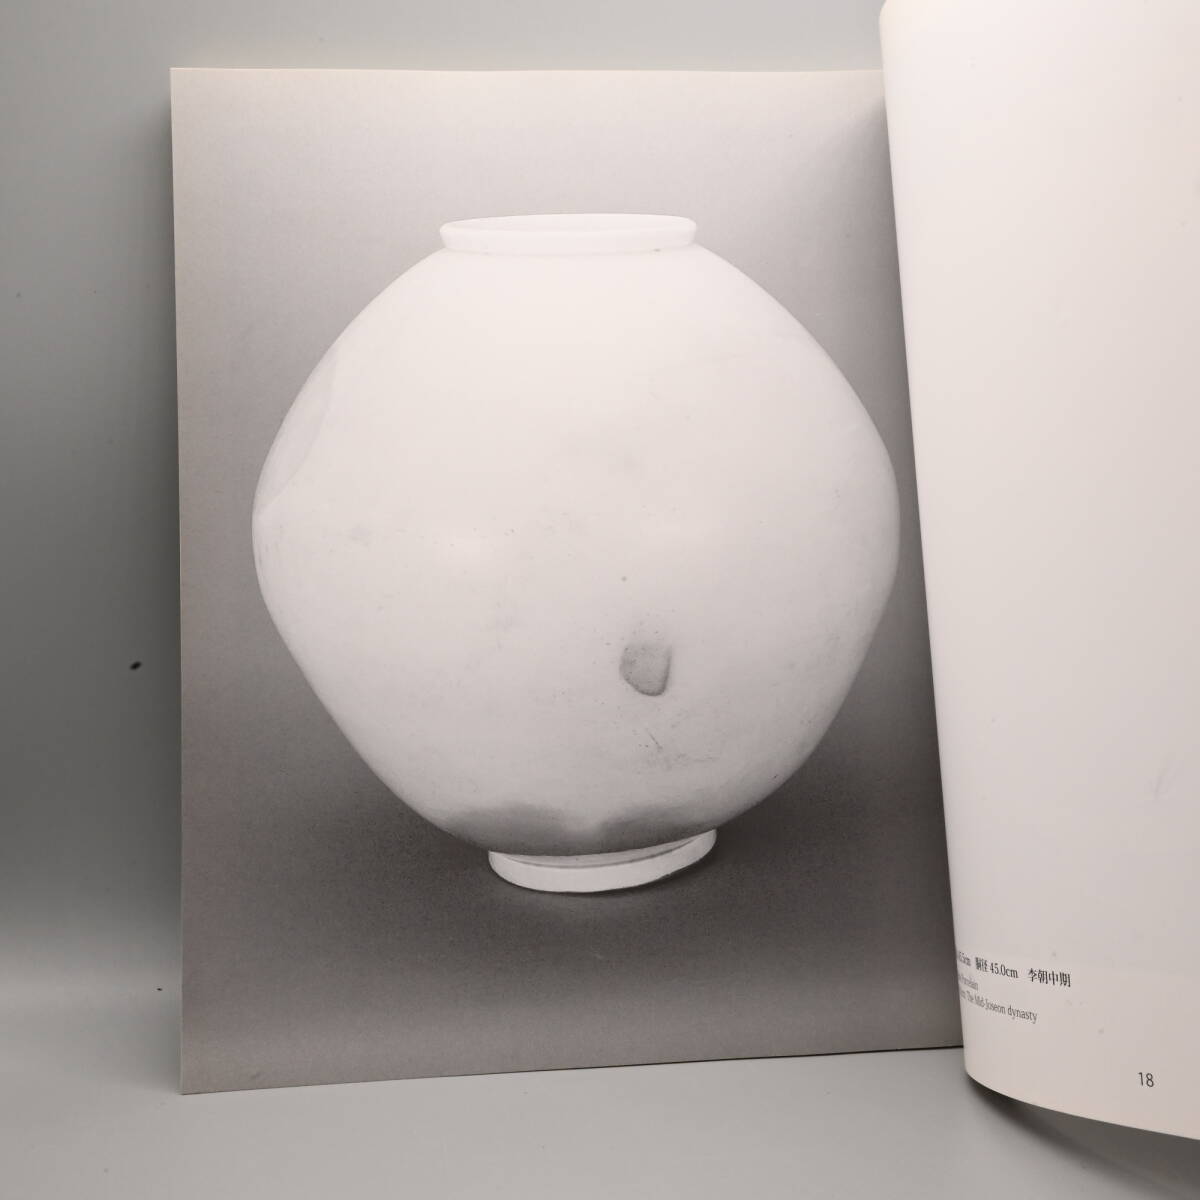 〇0617 書籍「李朝白磁抄選」伊丹潤 2009 HANEGI MUSEUM 陶磁器 やきもの 朝鮮美術の画像6